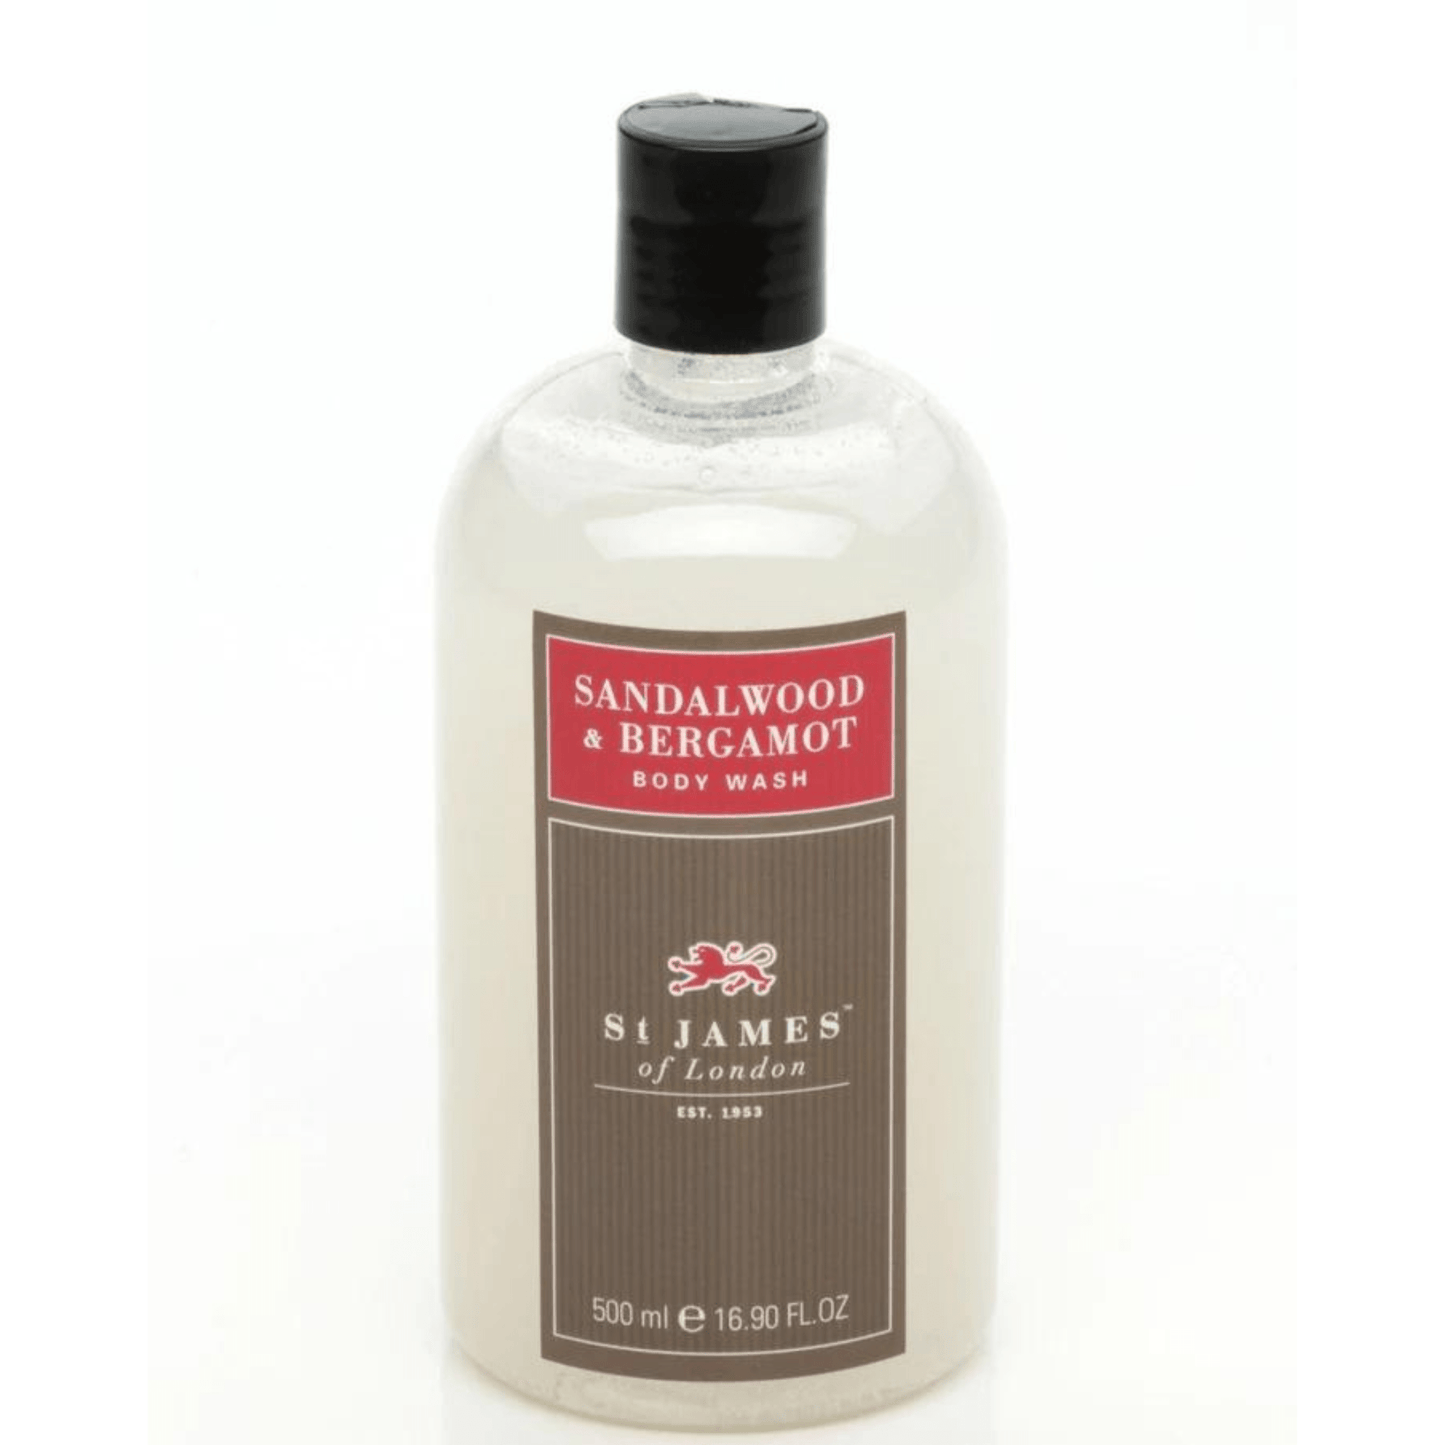 Primary Image of Sandalwood & Bergamot Body Wash